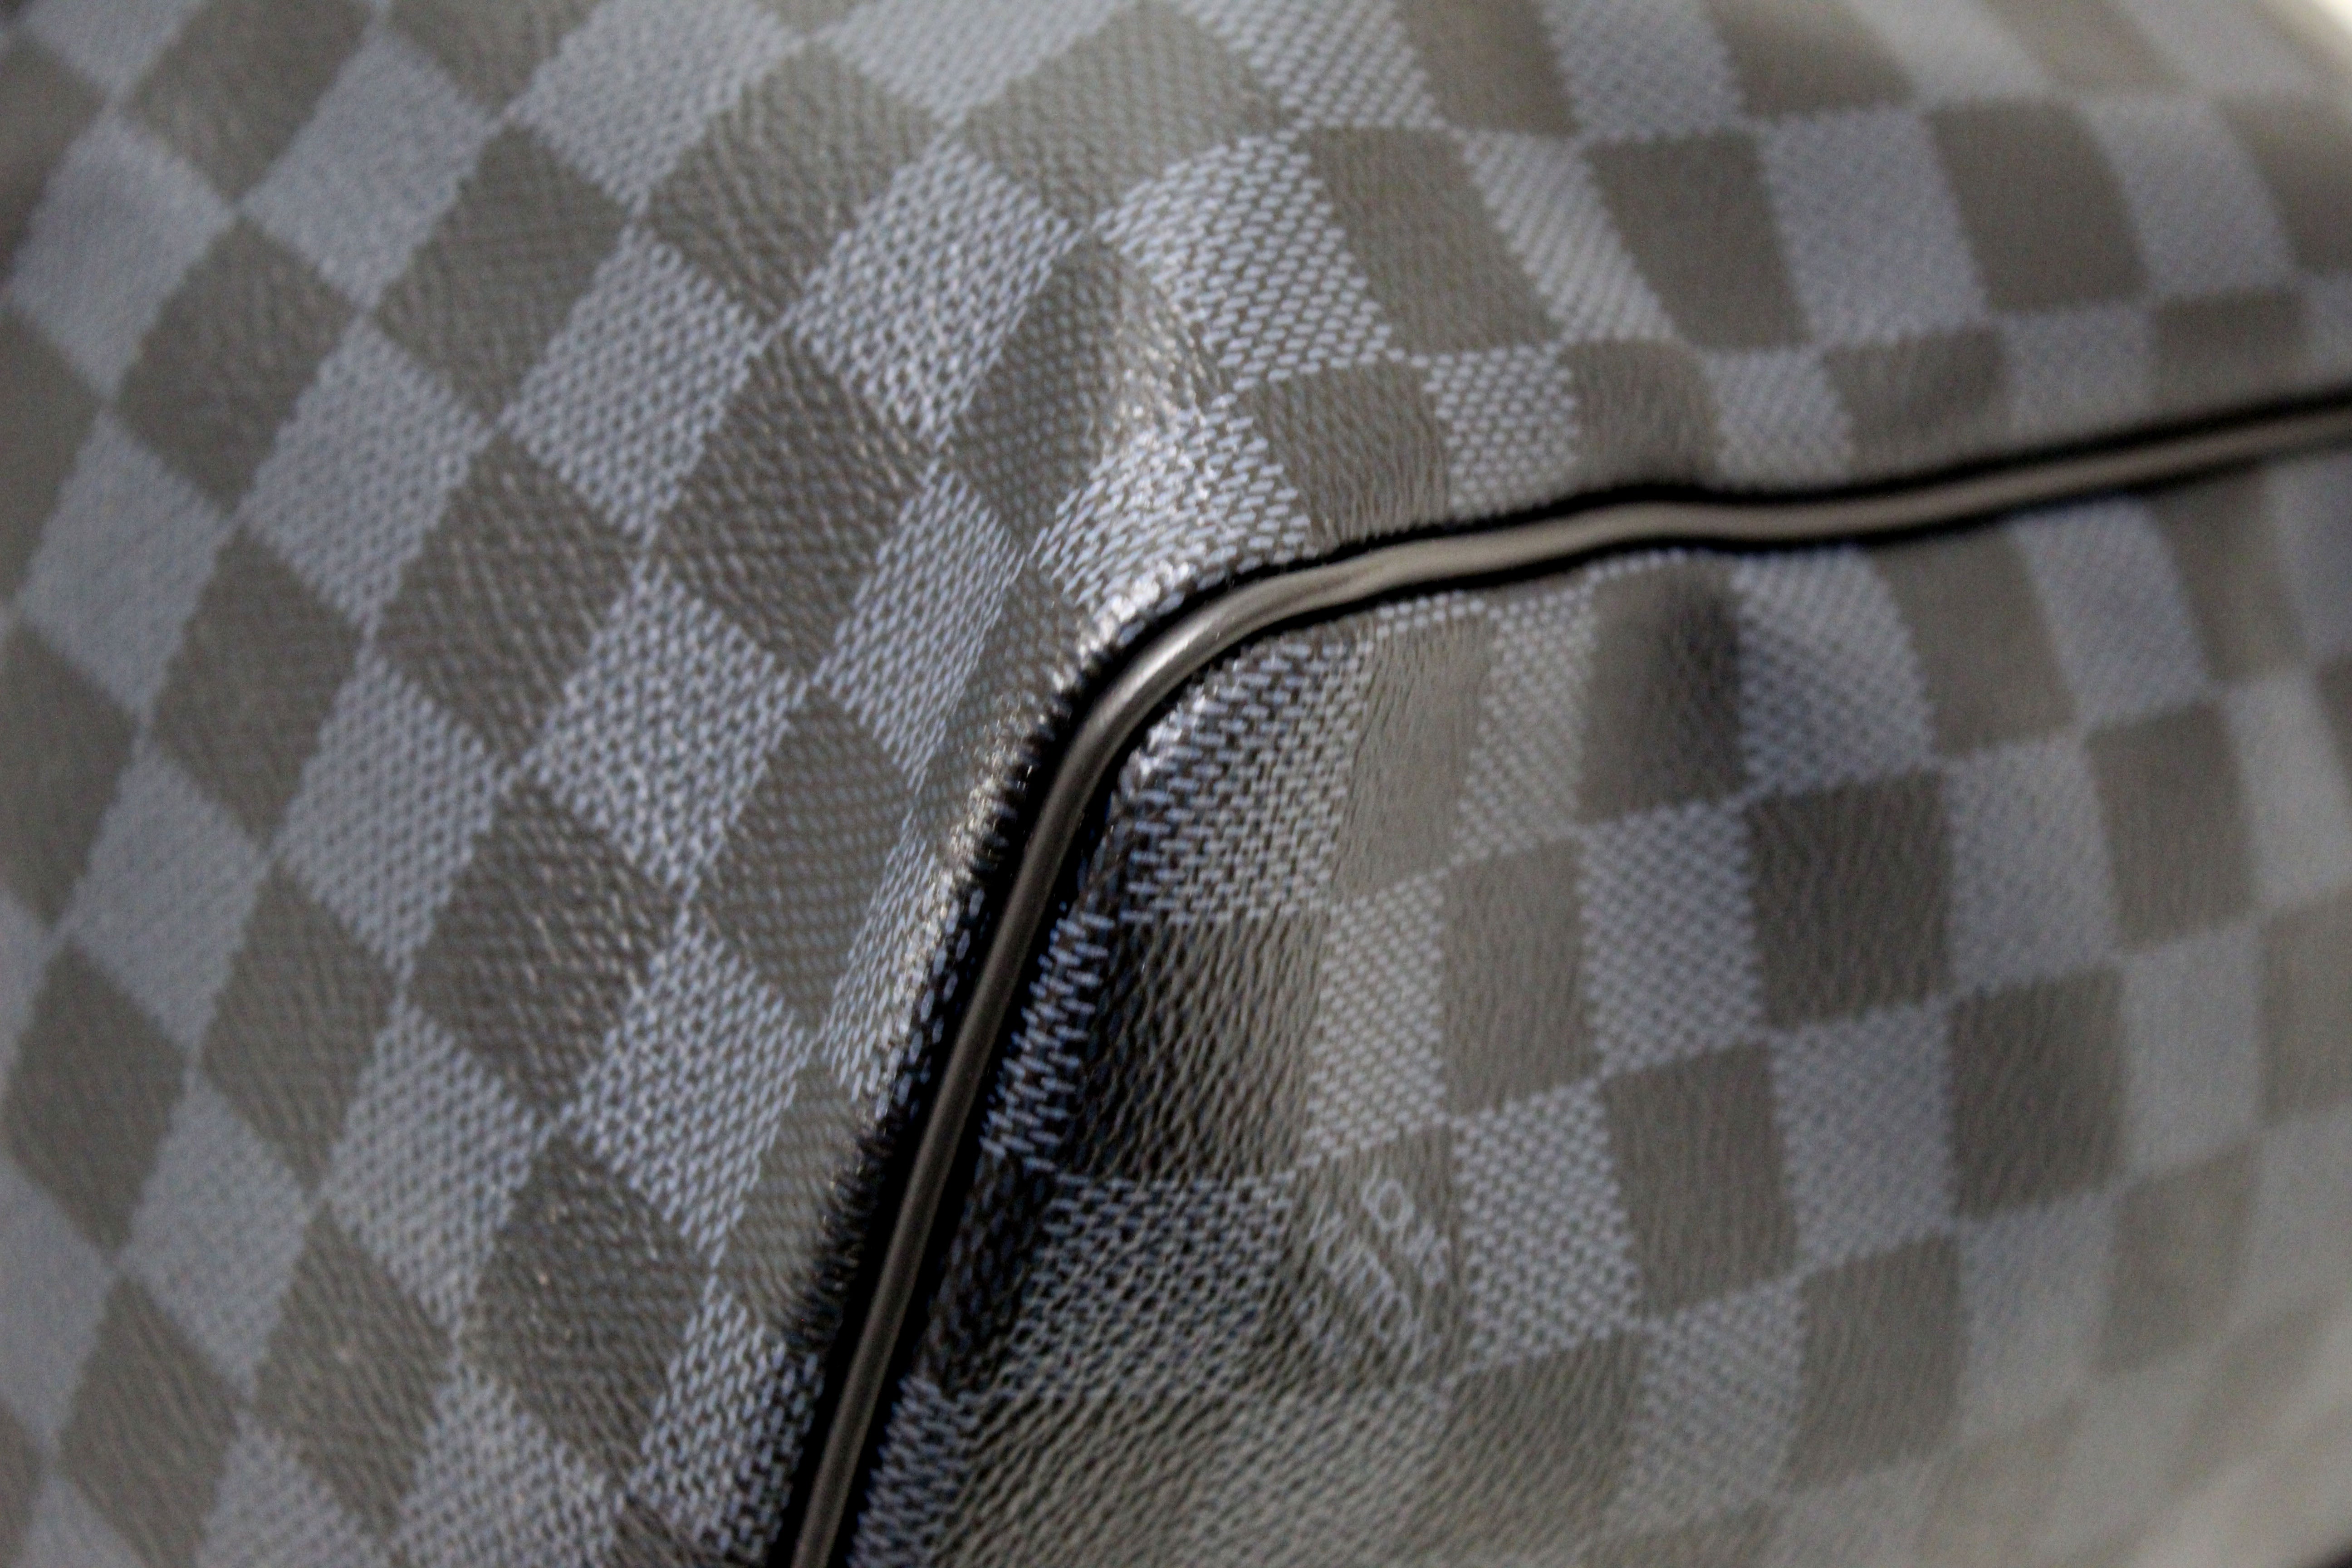 Louis Vuitton City Keepall Damier Stripes Shoulder Bag Gradient Blue